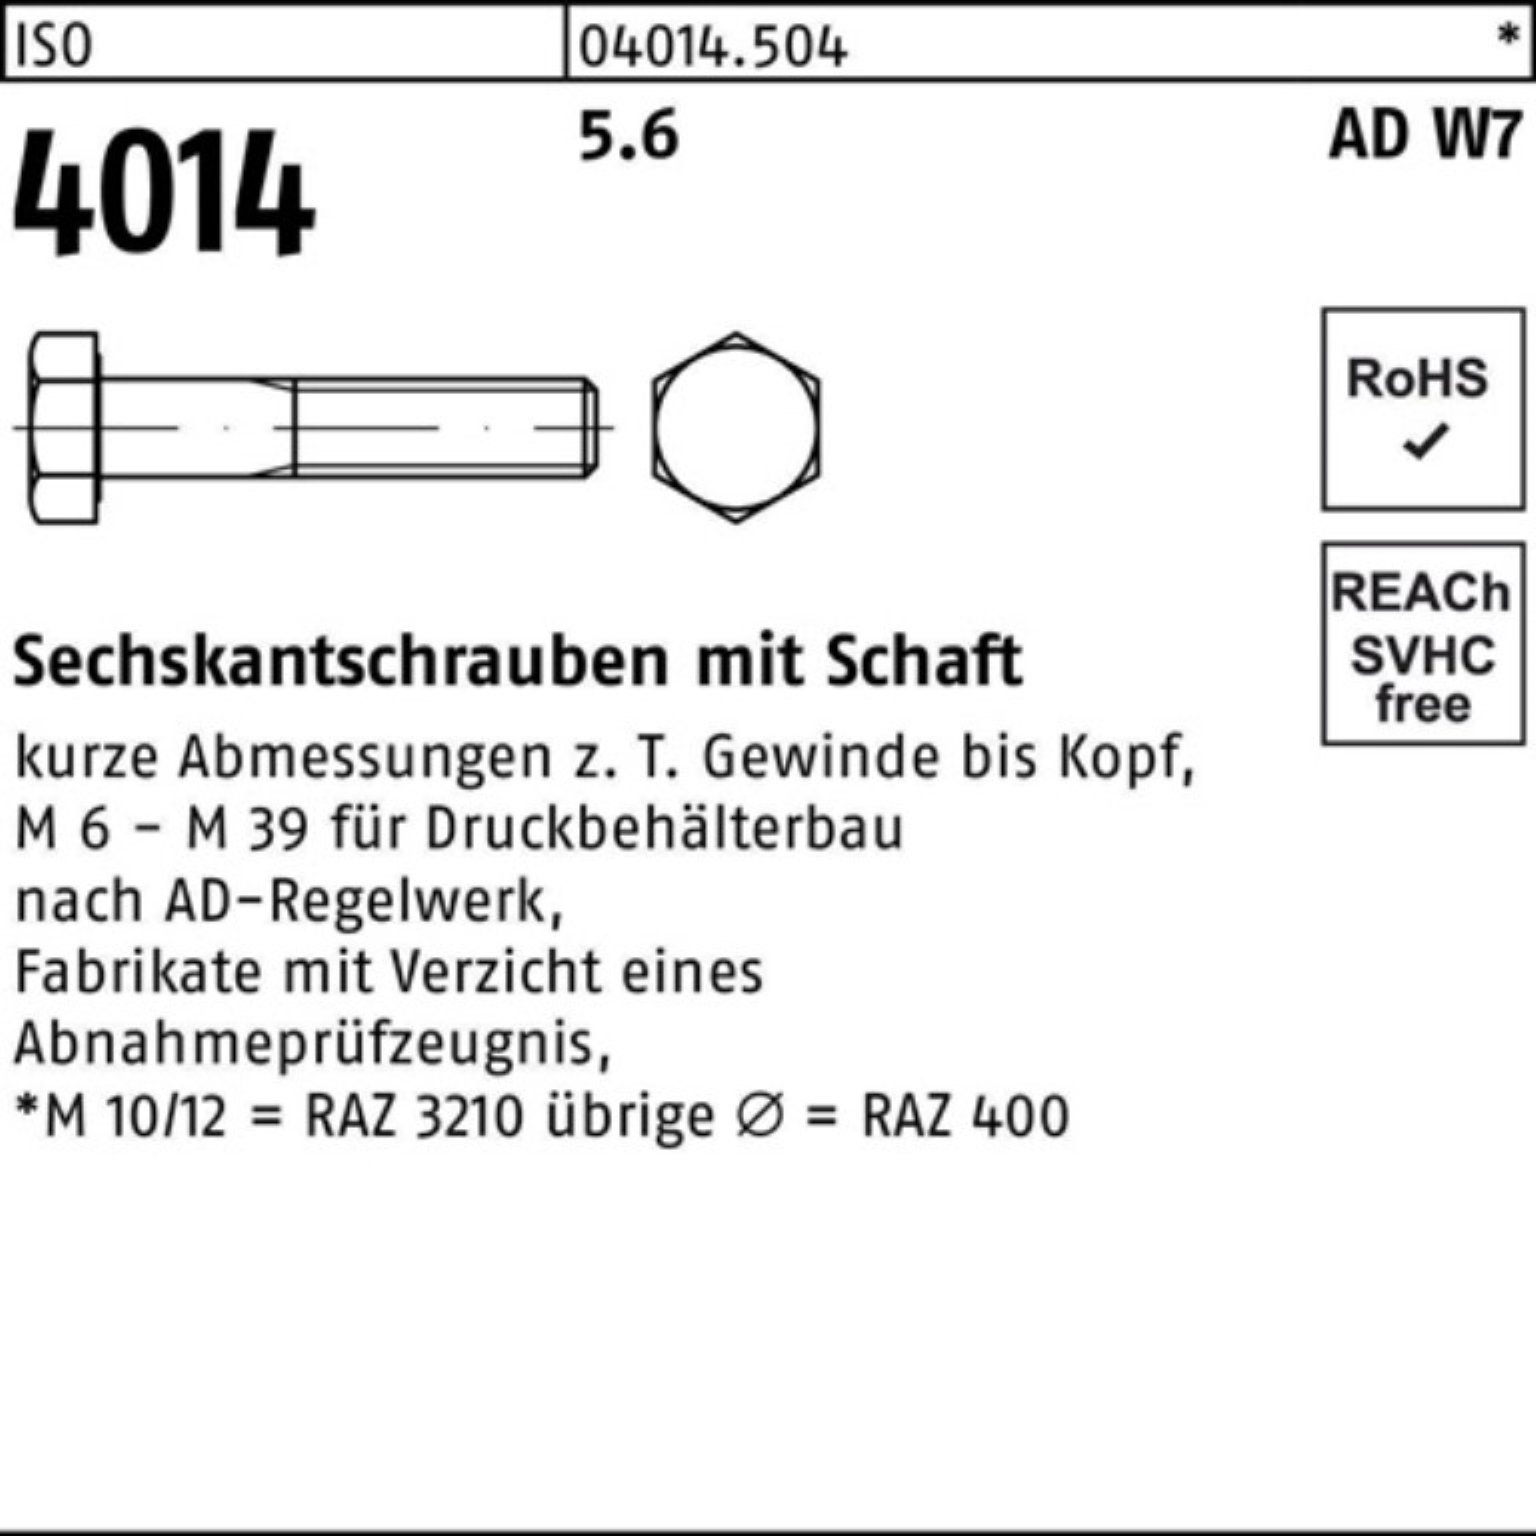 Sechskantschraube W7 Schaft 4014 Sechskantschraube Bufab 150 5.6 ISO Stück Pack 10 M24x 100er